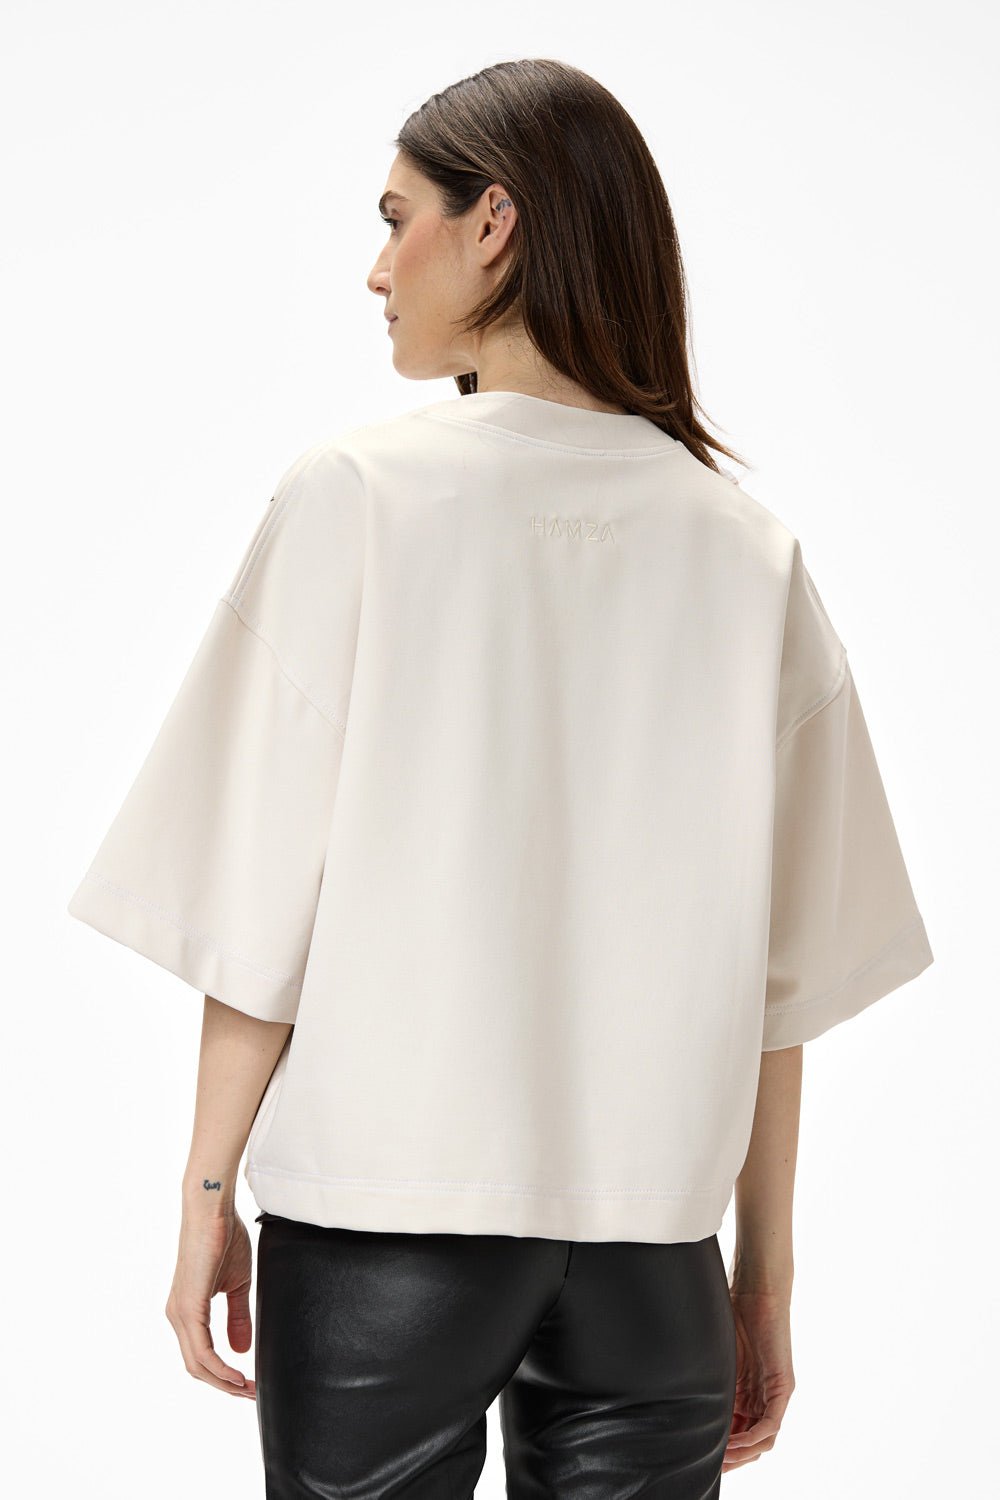 Tricou damă, alb-crem, imprimeu Pochette, viscoză premium, croială oversized, detalii elegante (mâneci conice).